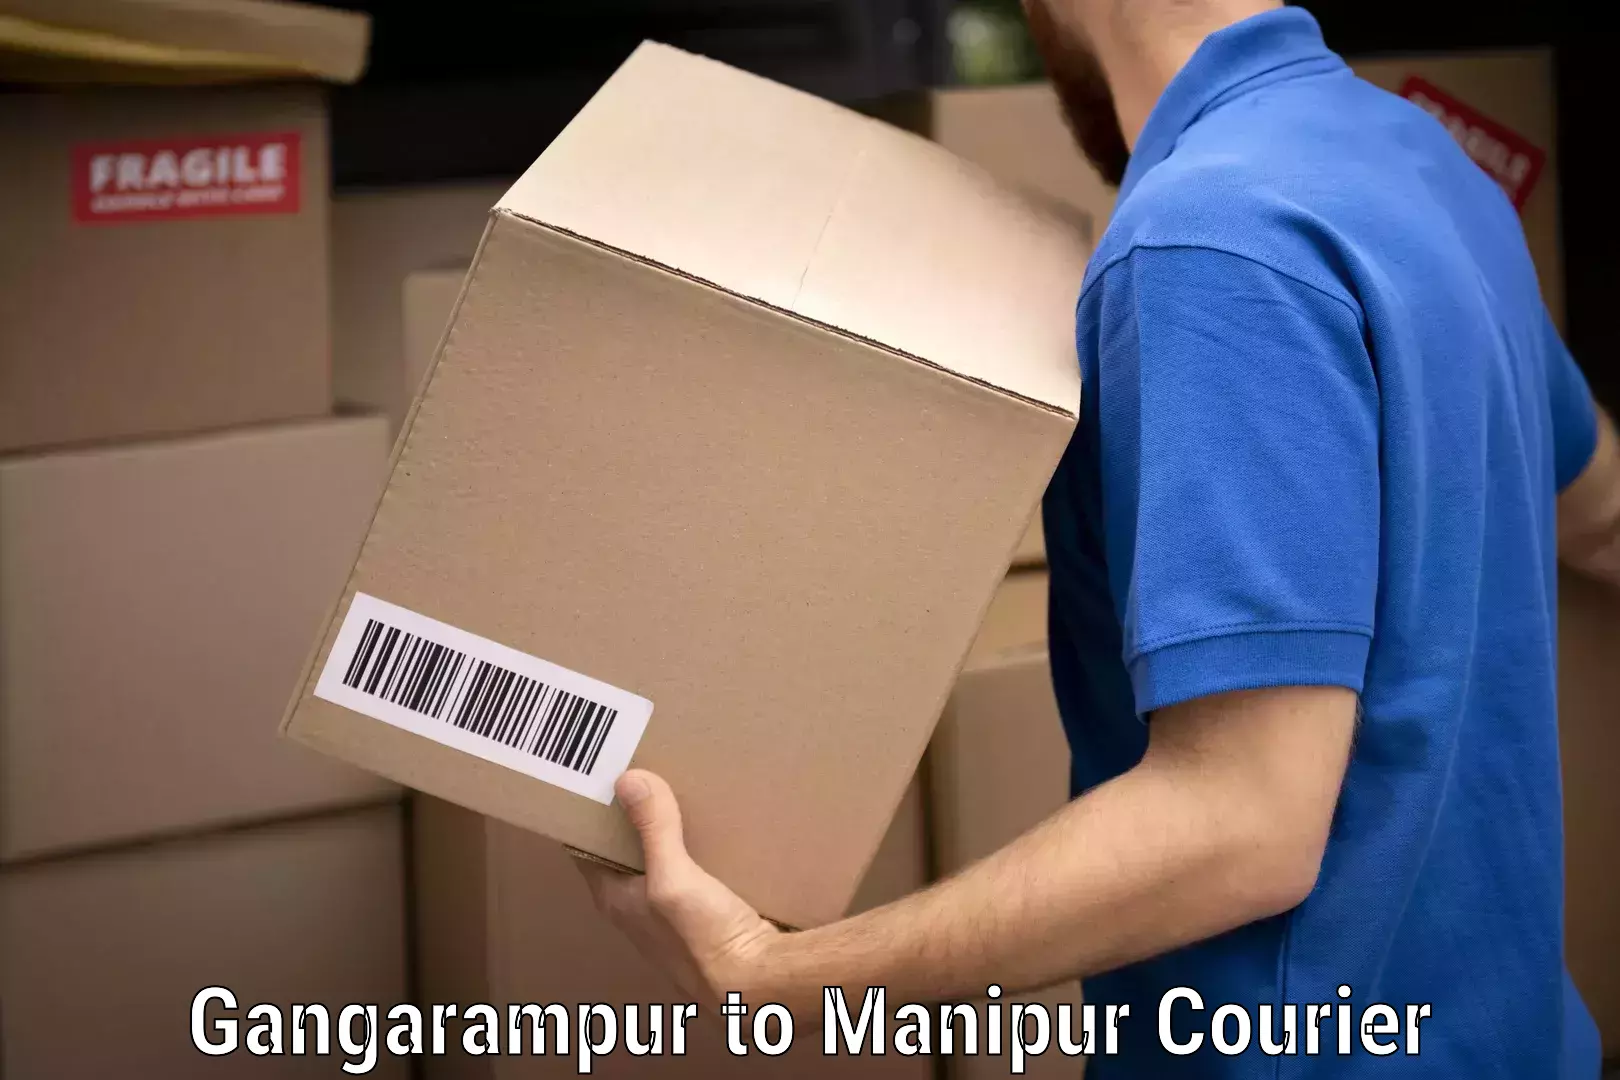 Skilled furniture transporters Gangarampur to Manipur